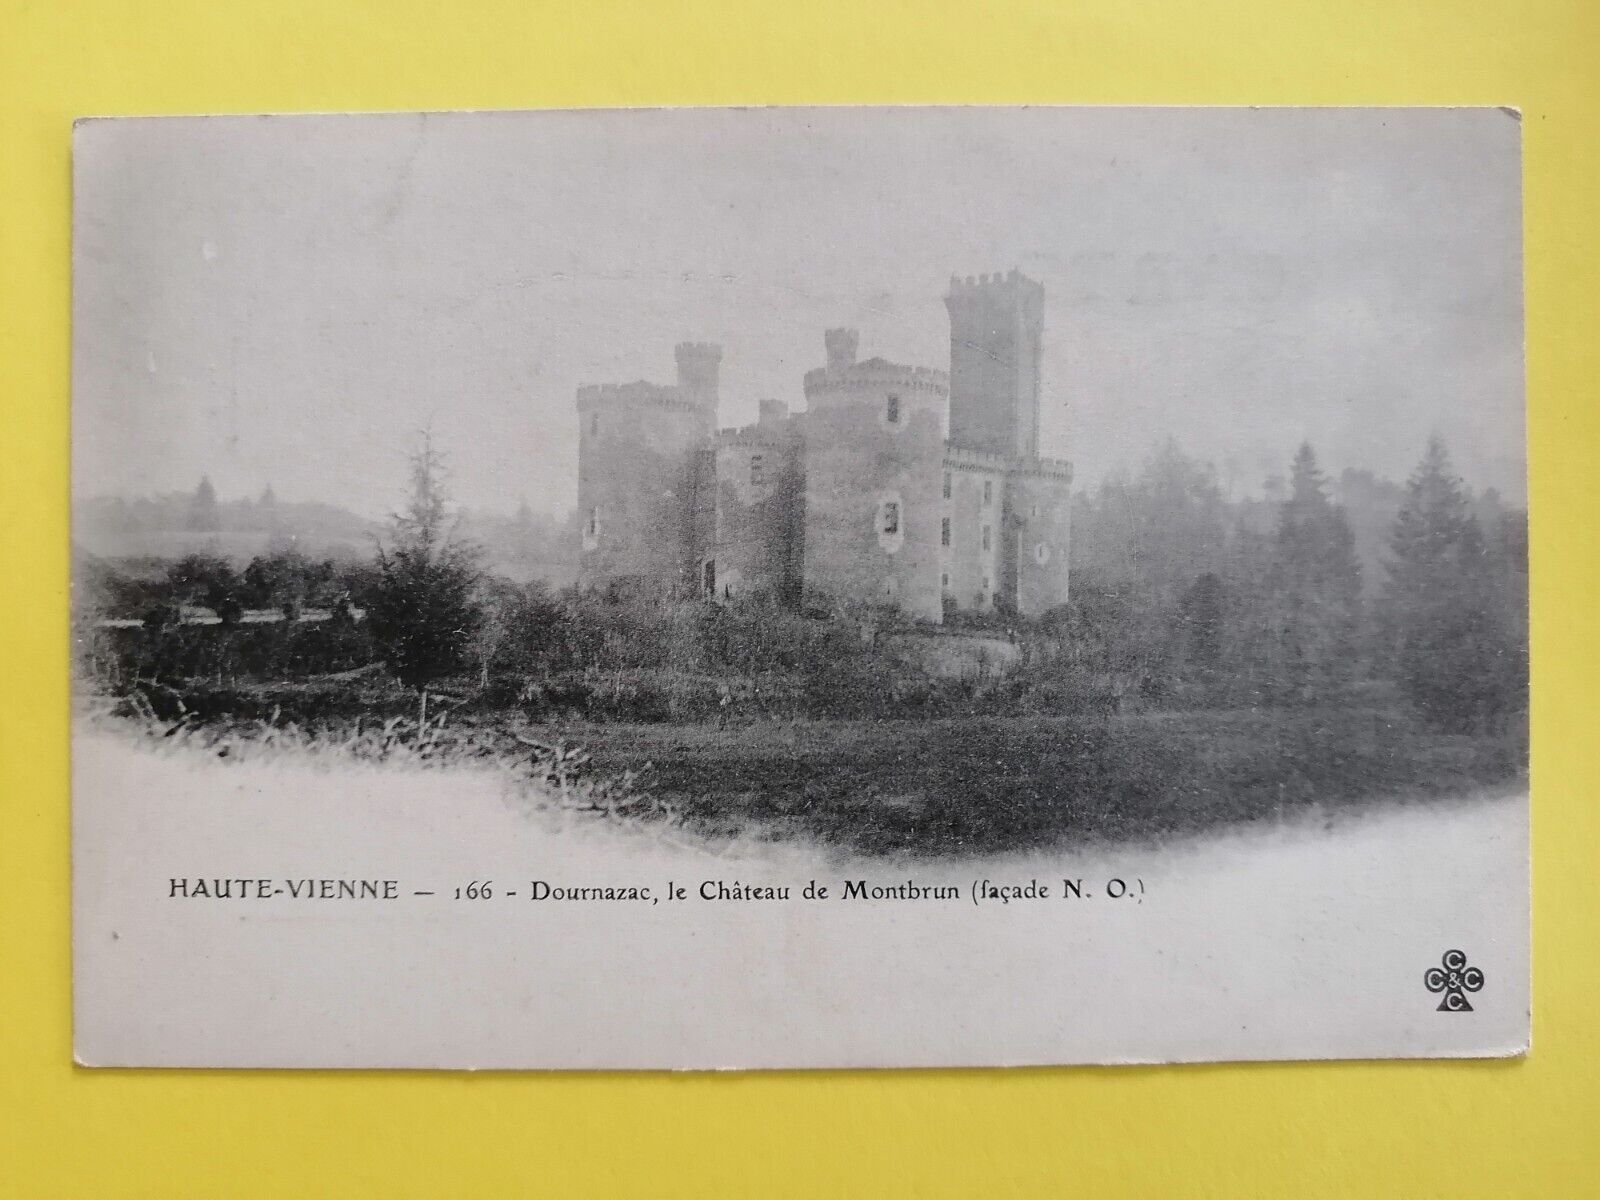 CPA 87 - DOURNAZAC Haute Vienne Le CHÂTEAU de MONTBRUN circa 1900 castle